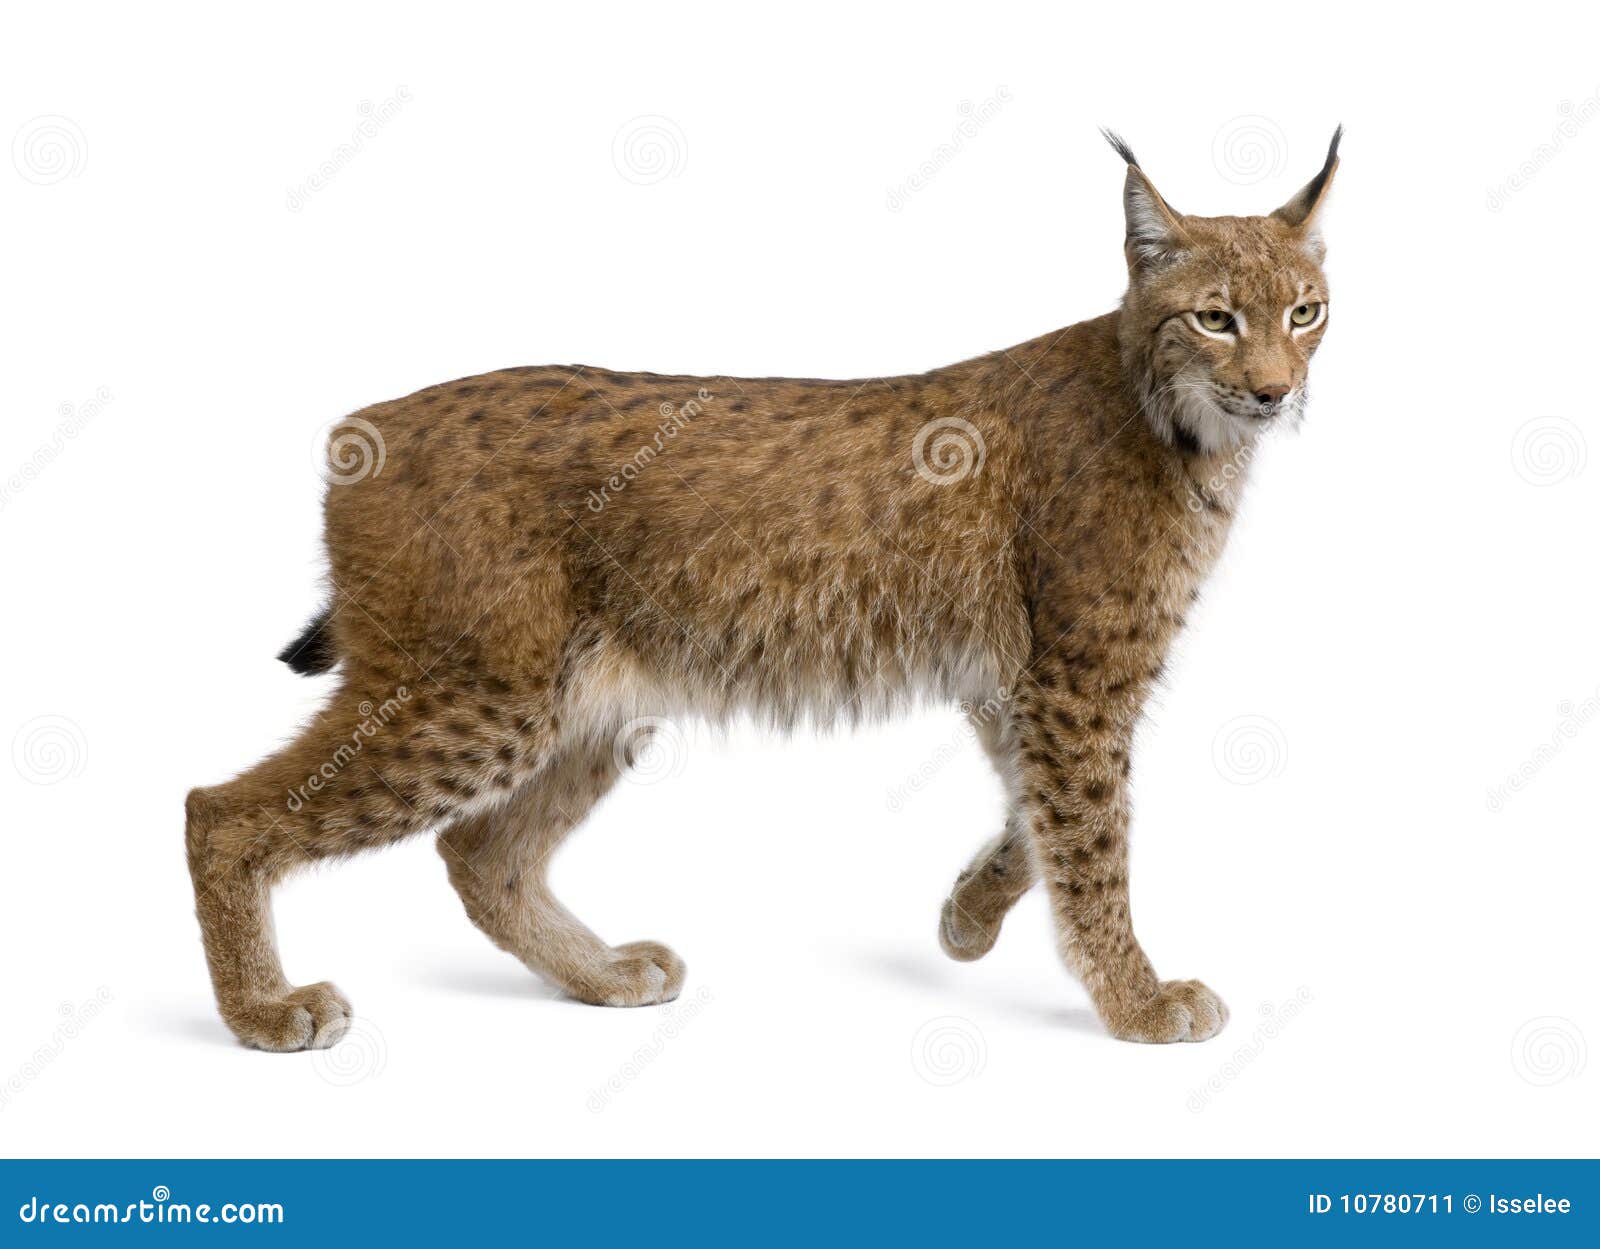 eurasian lynx, lynx lynx, 5 years old